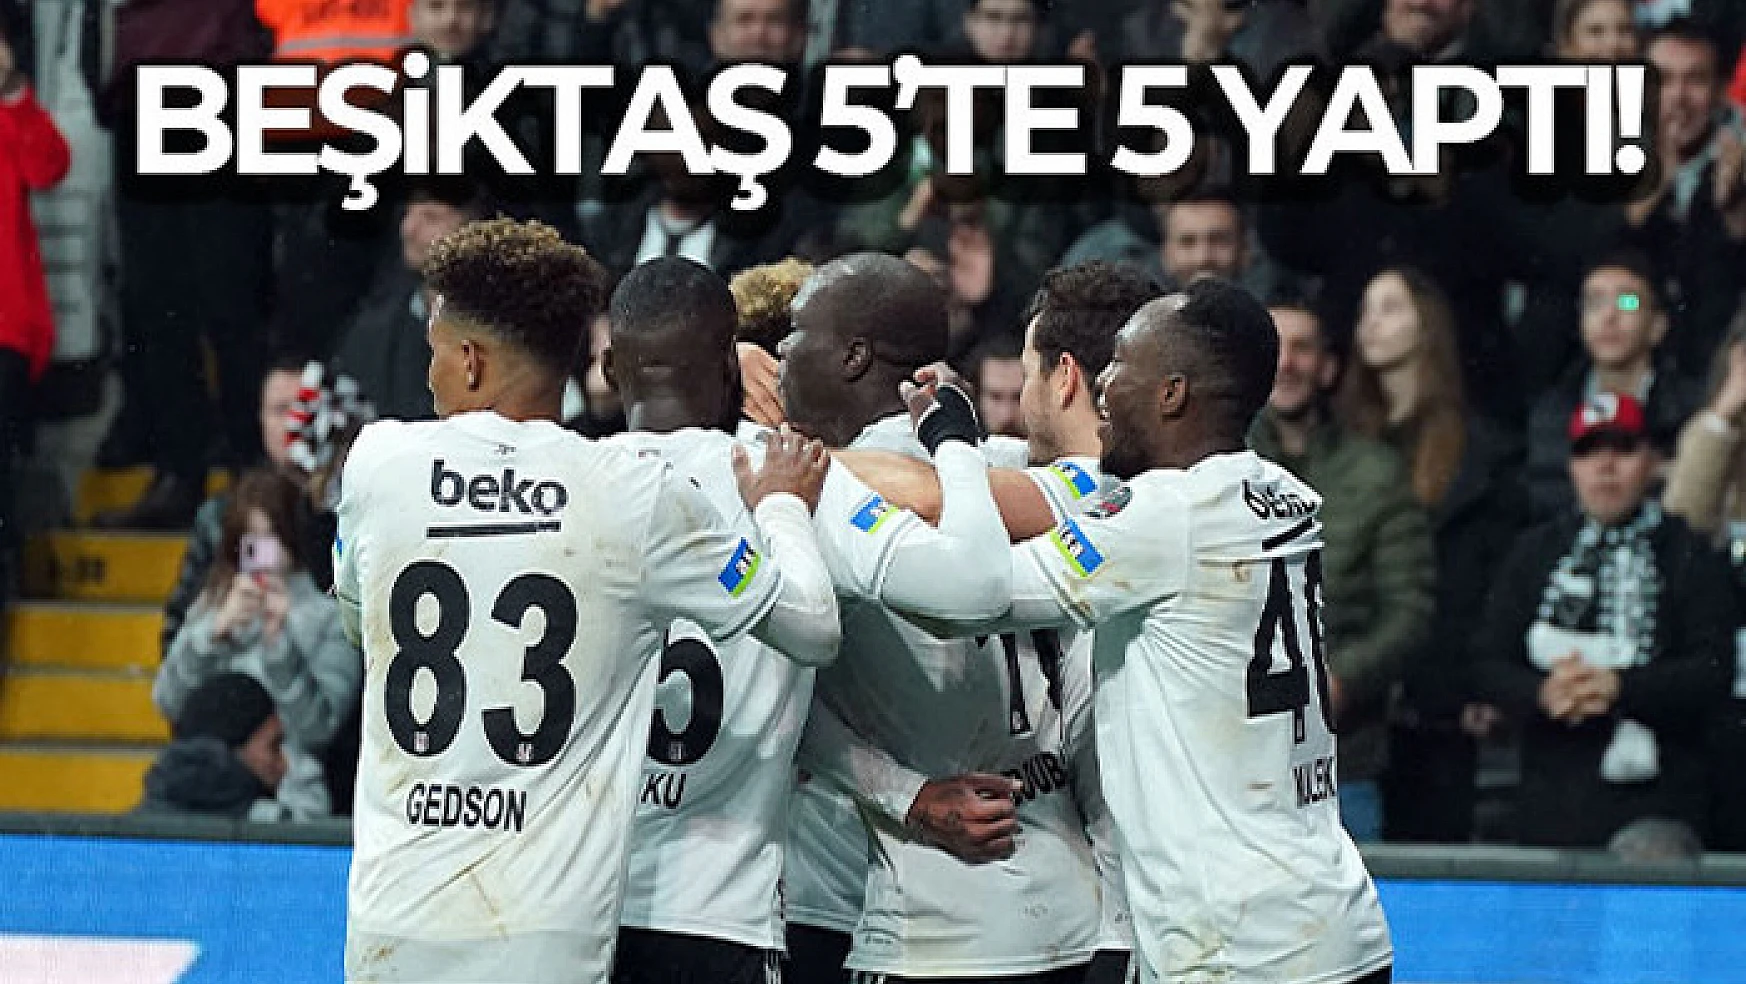 Beşiktaş 5'te 5 yaptı!